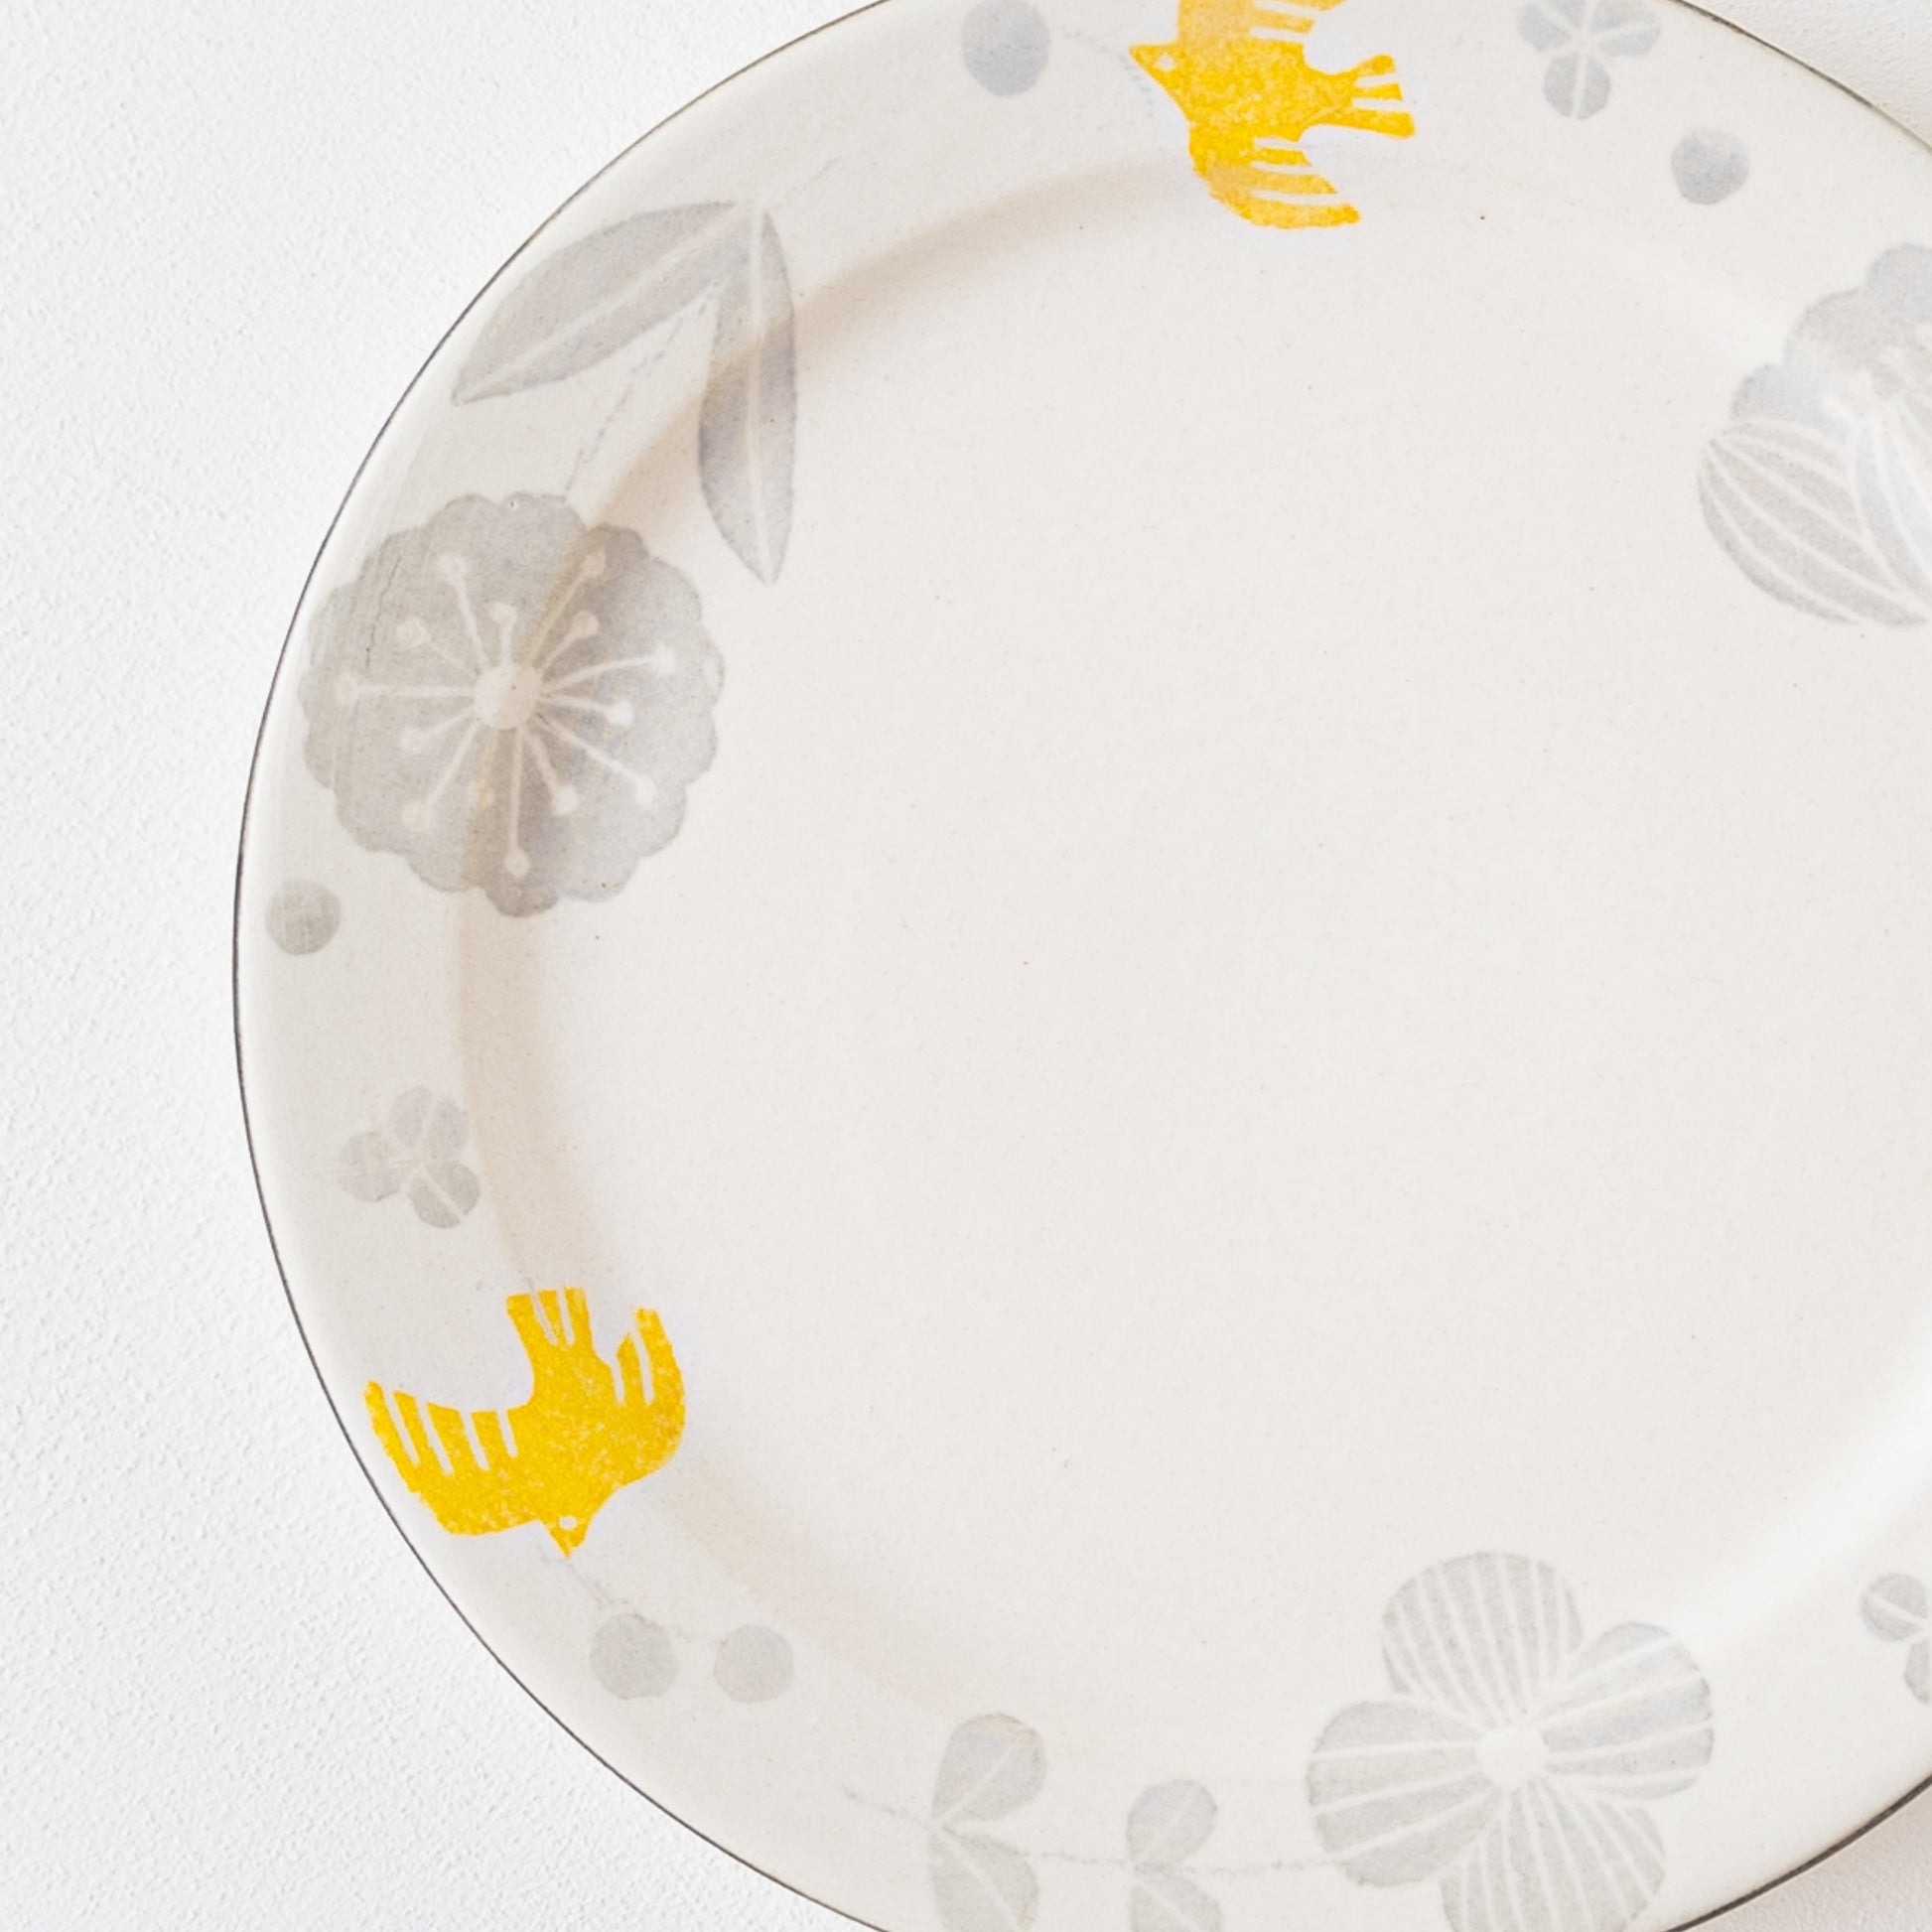 和紙染めの優しい風合いにほっこり癒される安見工房のメルヘン6寸リム皿